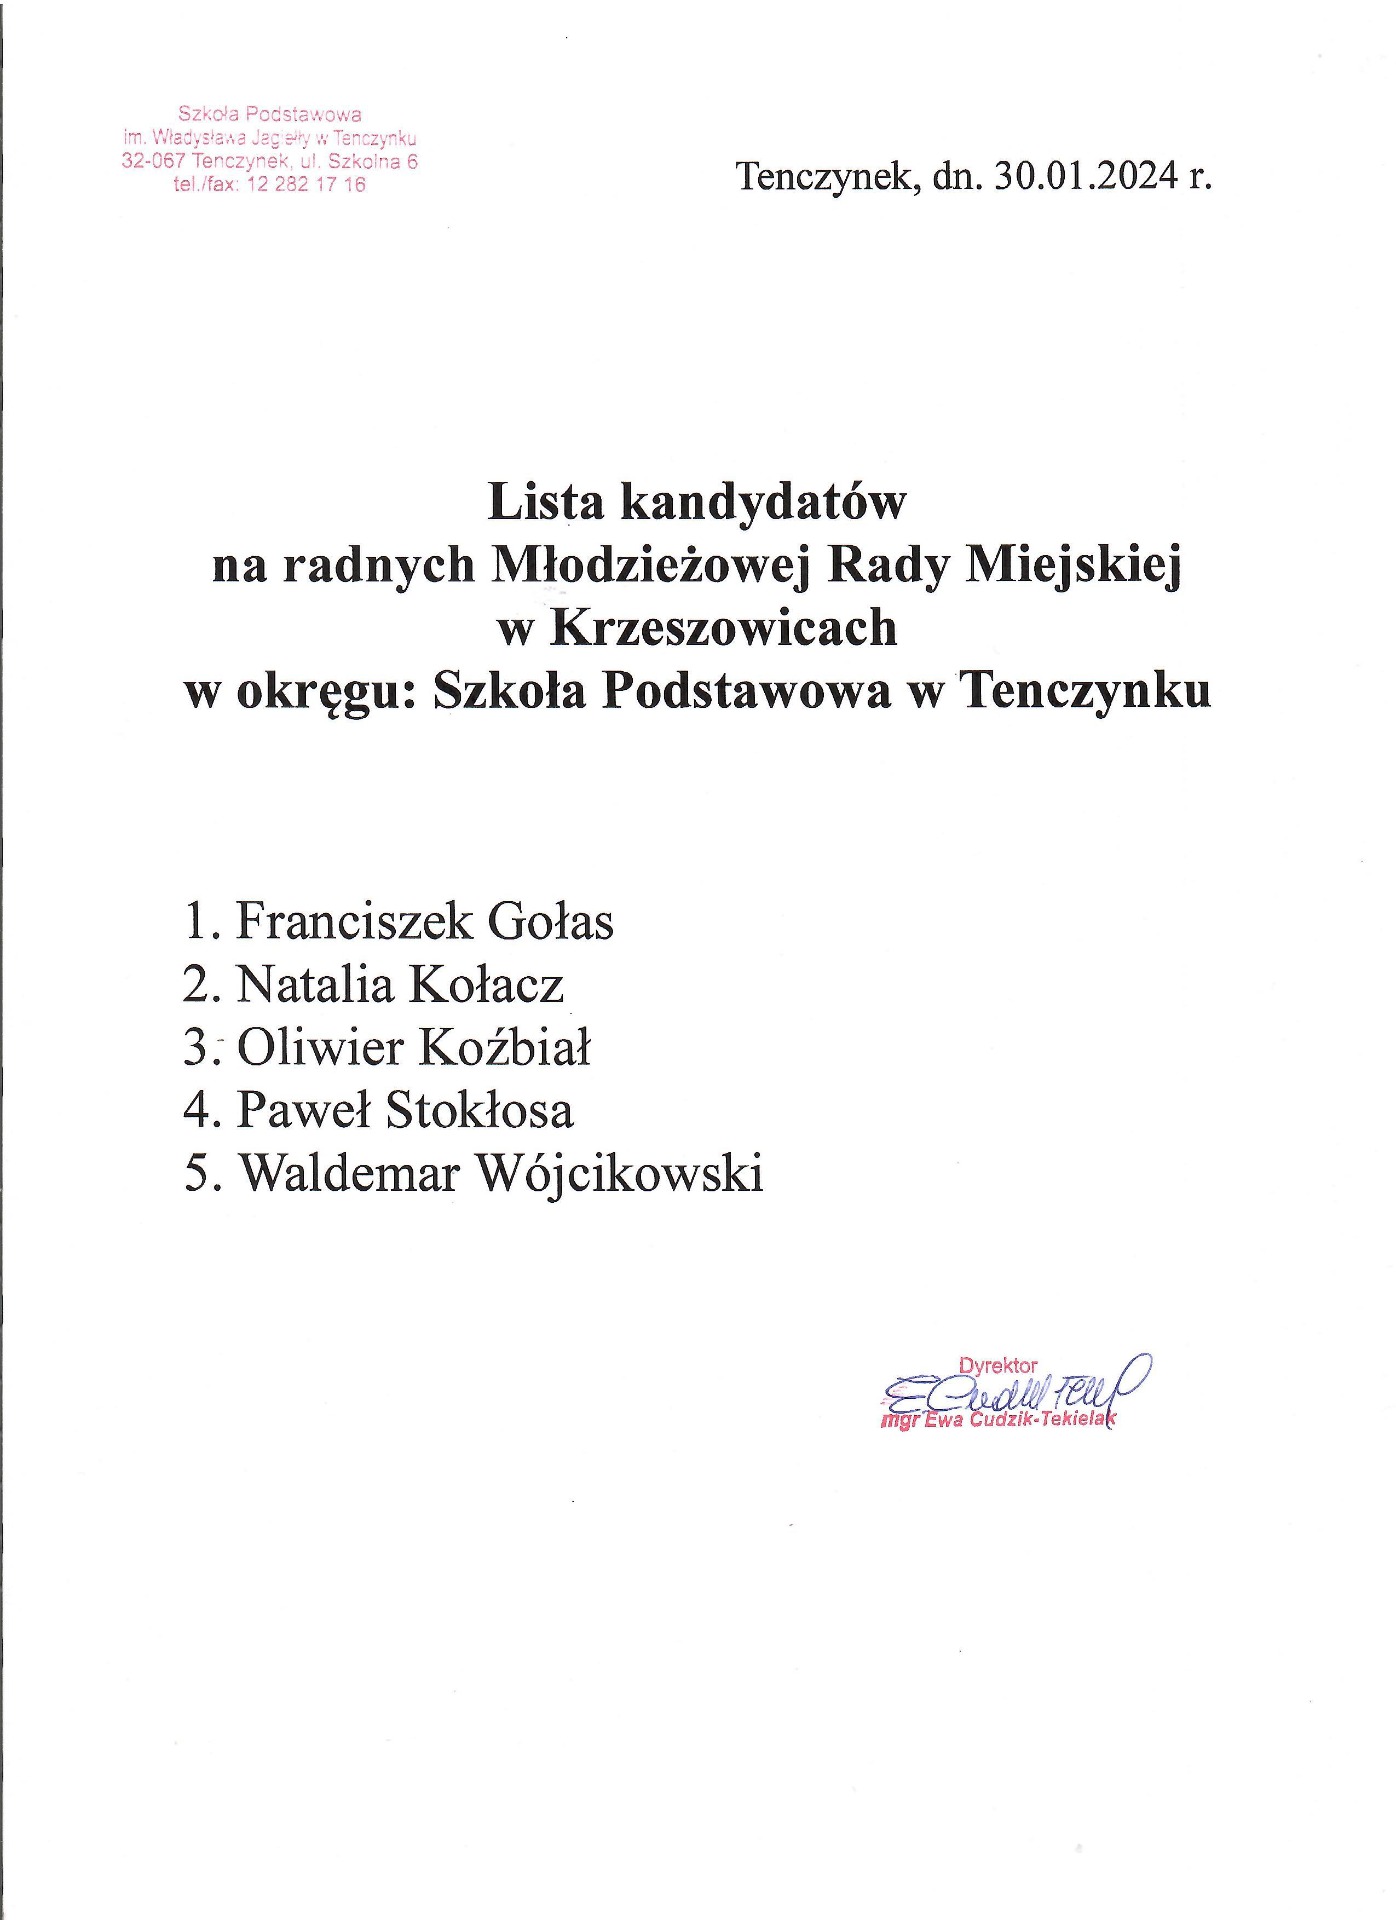 Lista kandydatów na radnych Młodzieżowej Rady Miejskiej w Krzeszowicach. - Obrazek 1